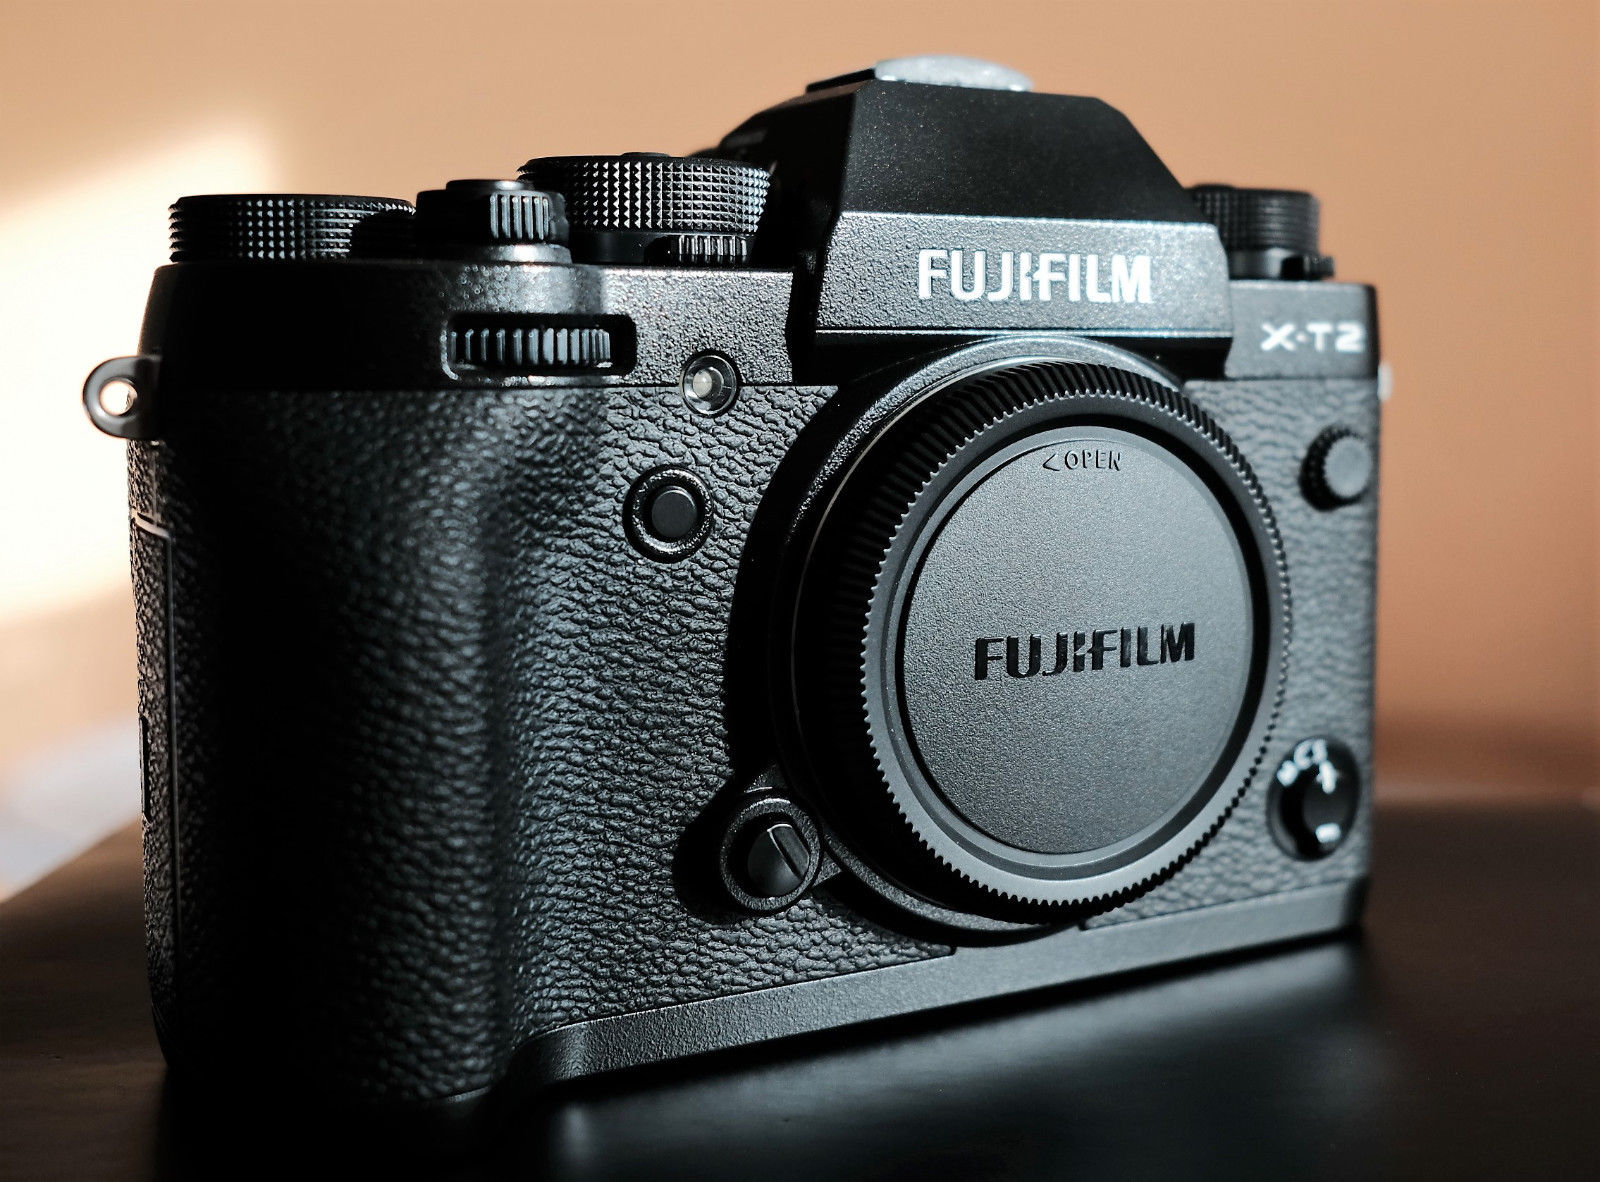 Fujifilm X-T2 Body in neuwertigem Zustand, mit OVP und Restgarantie.